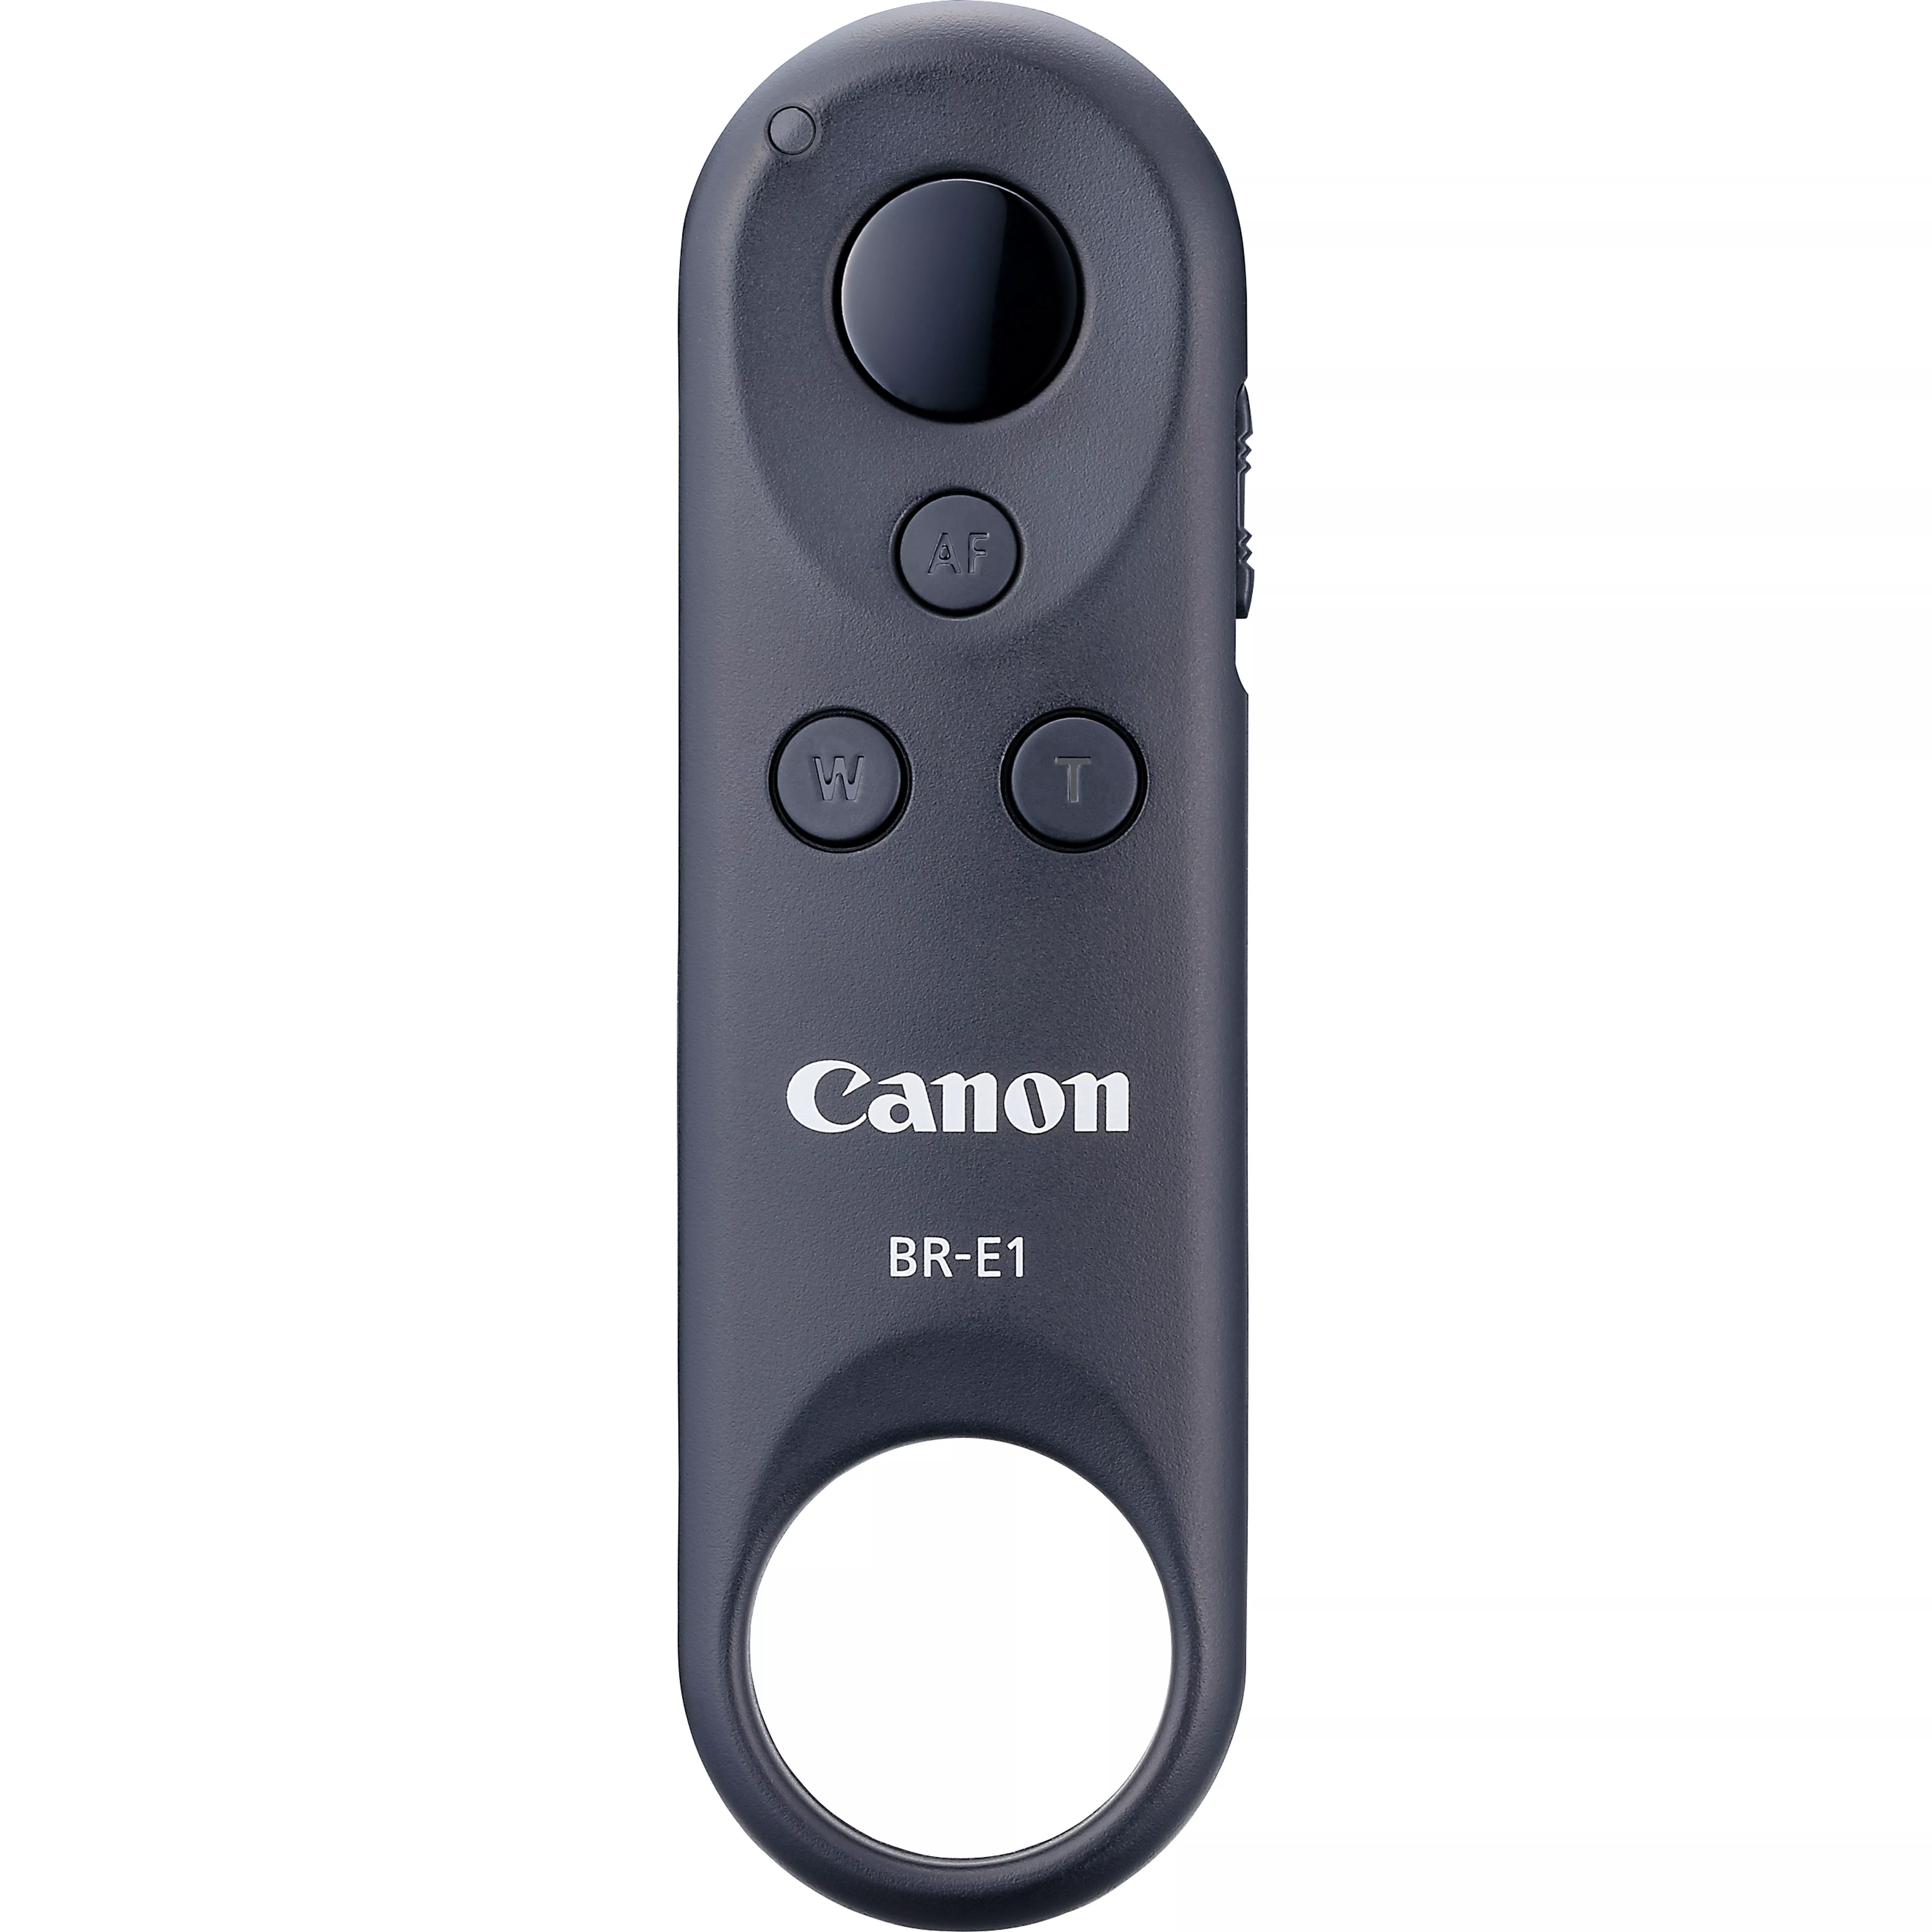 Revendeur officiel Canon Télécommande sans fil BR-E1